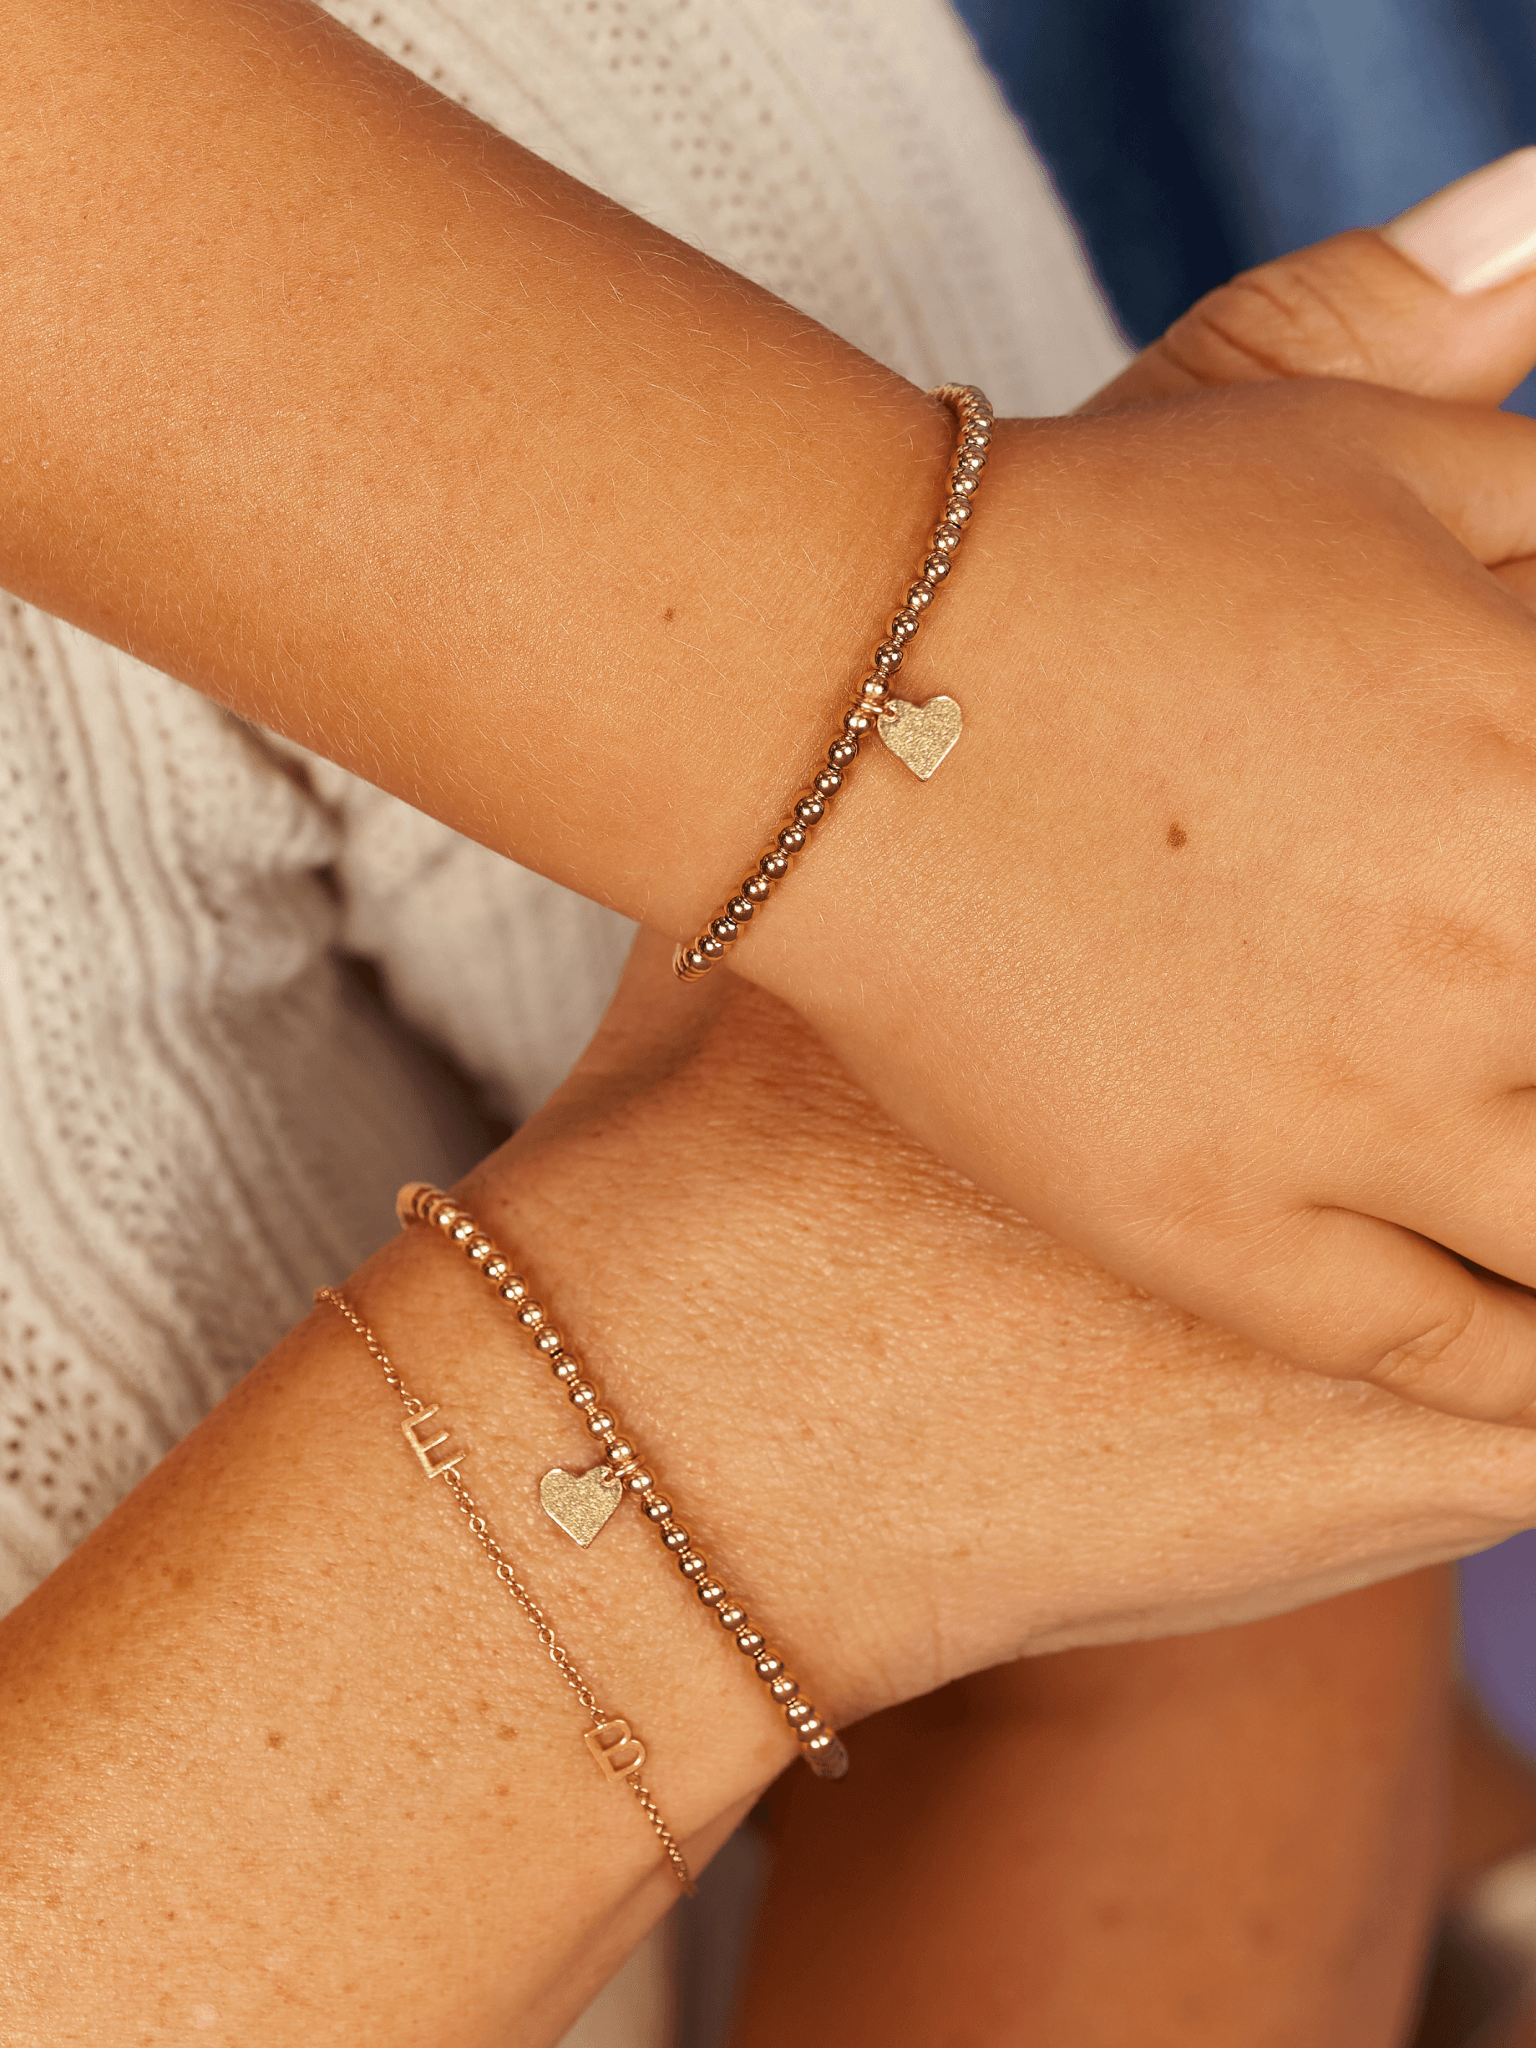 Dangling Dotted Bracelet | Bracelets, Beautiful jewelry, Delicate bracelet